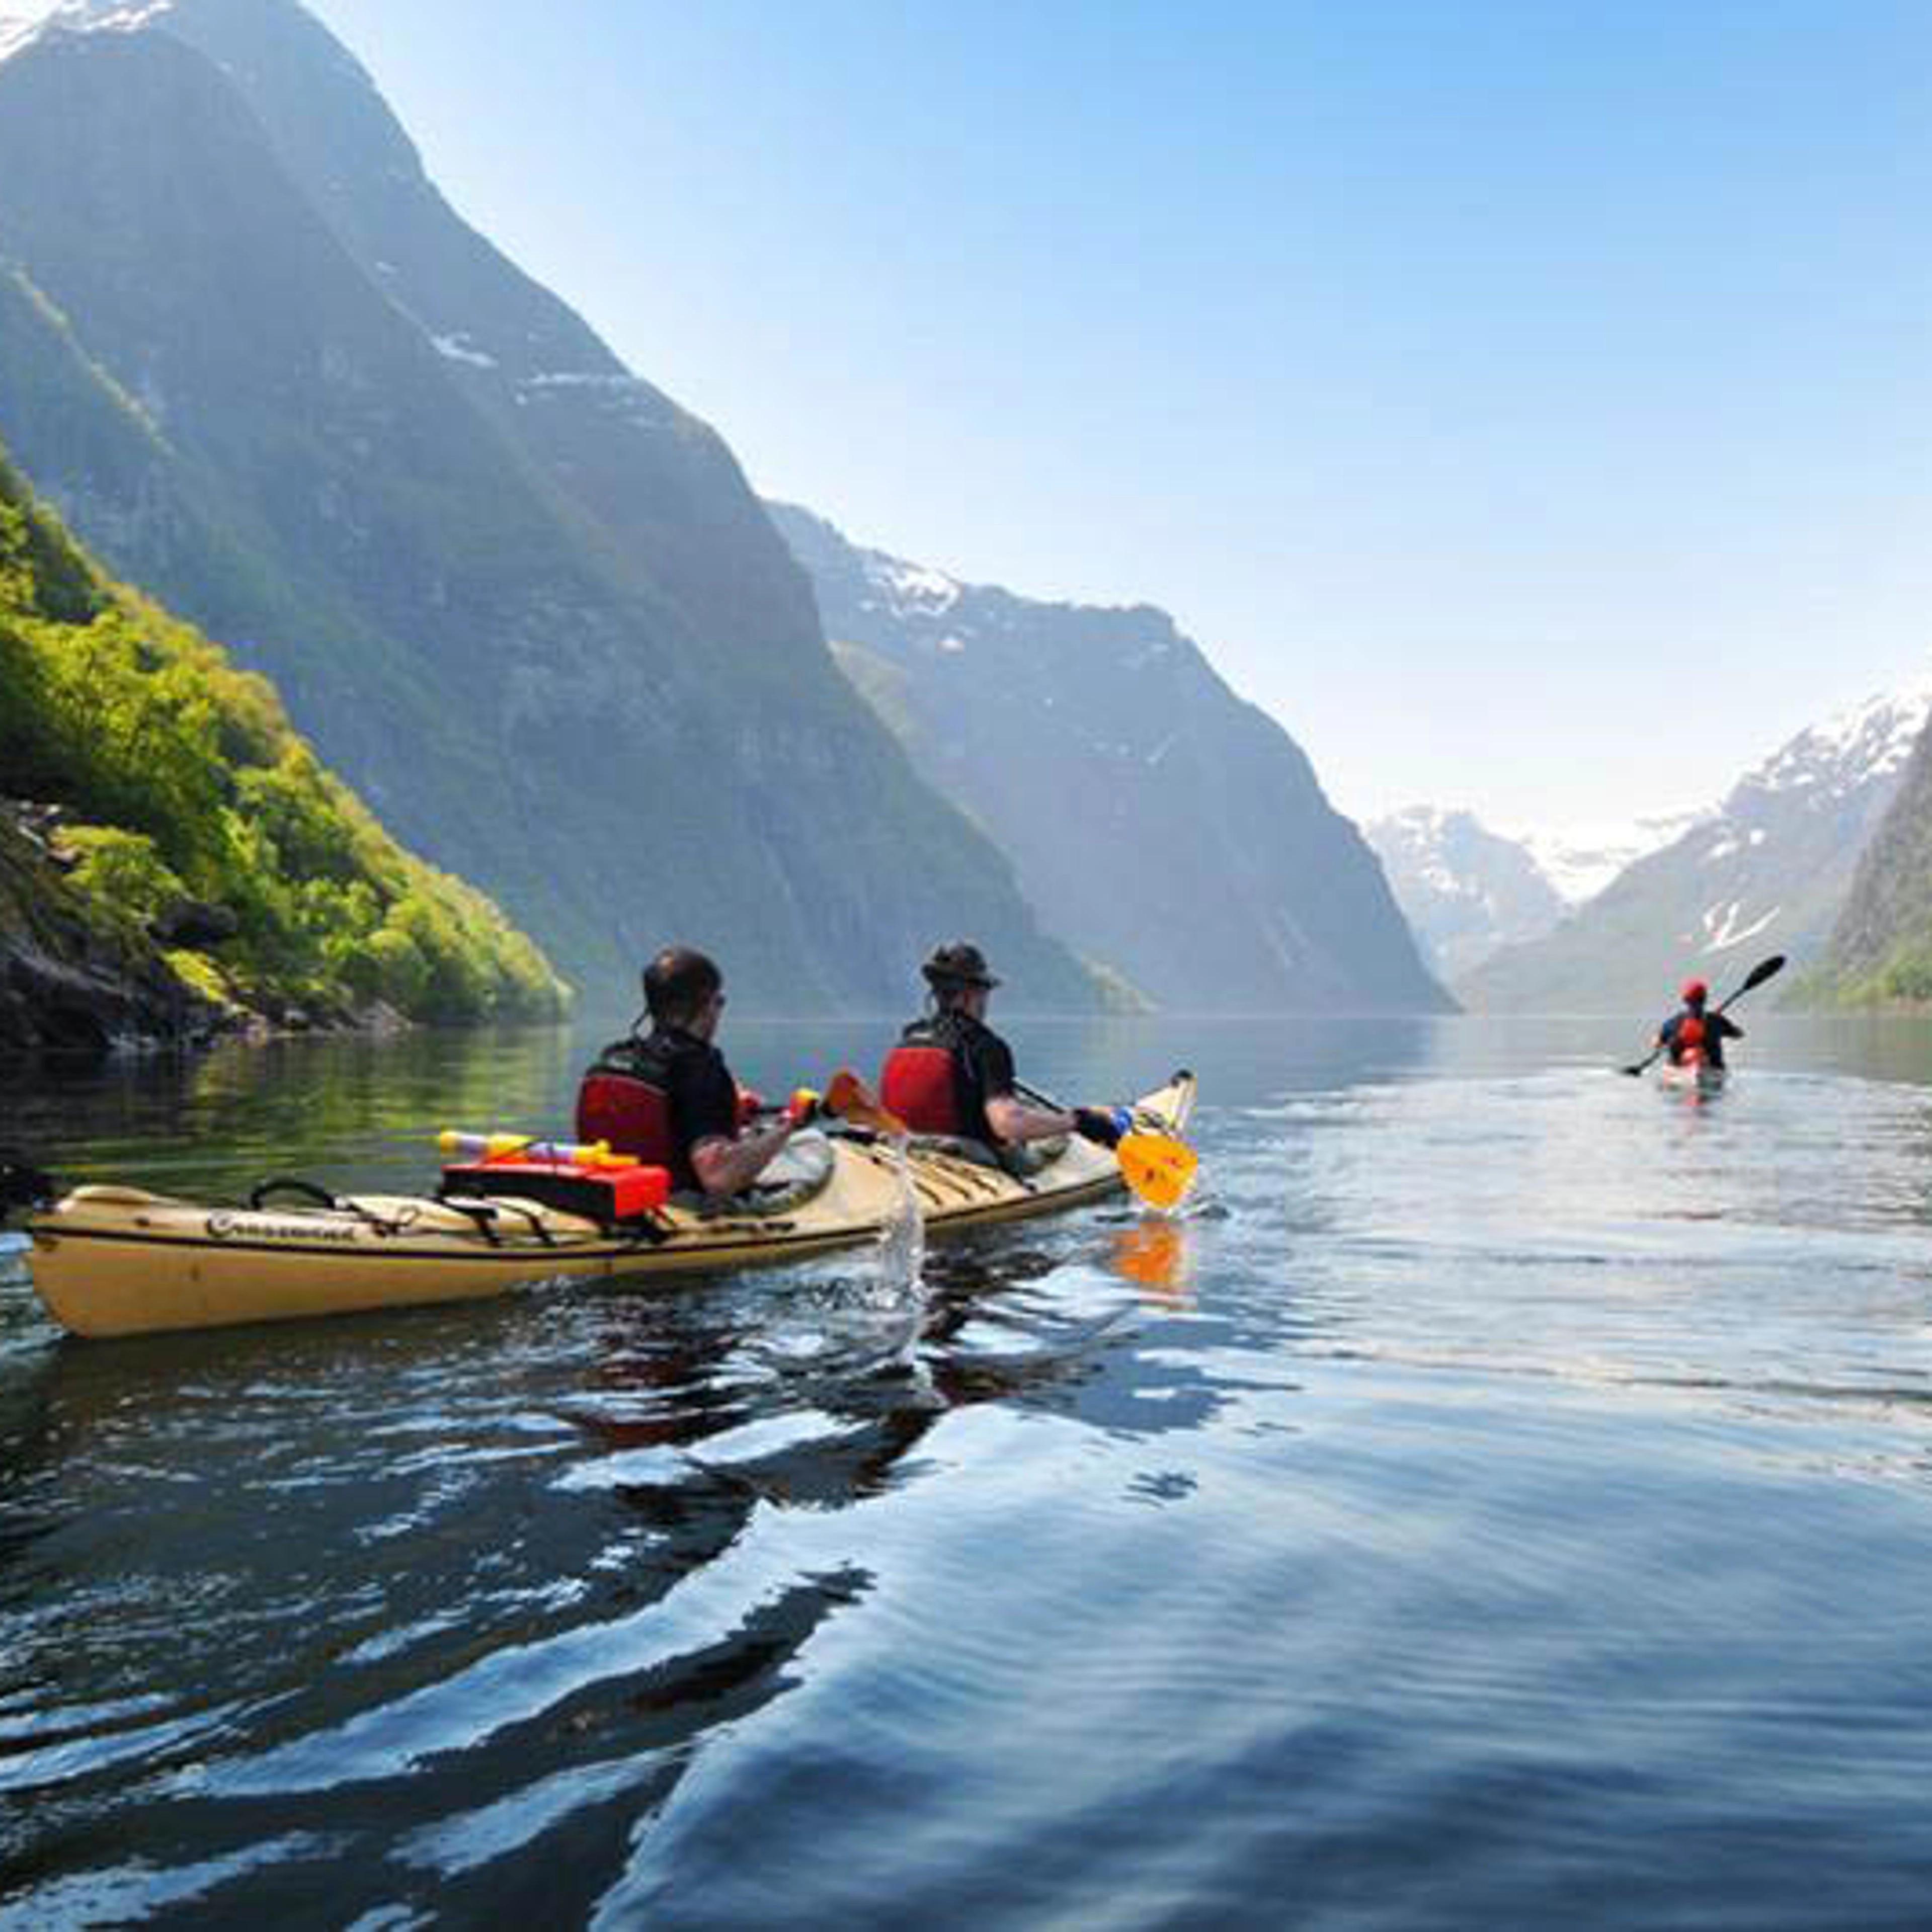 Things to do in Flåm - Kayak trip on the Aurlandsfjord 3 hours - Flåm, Norway